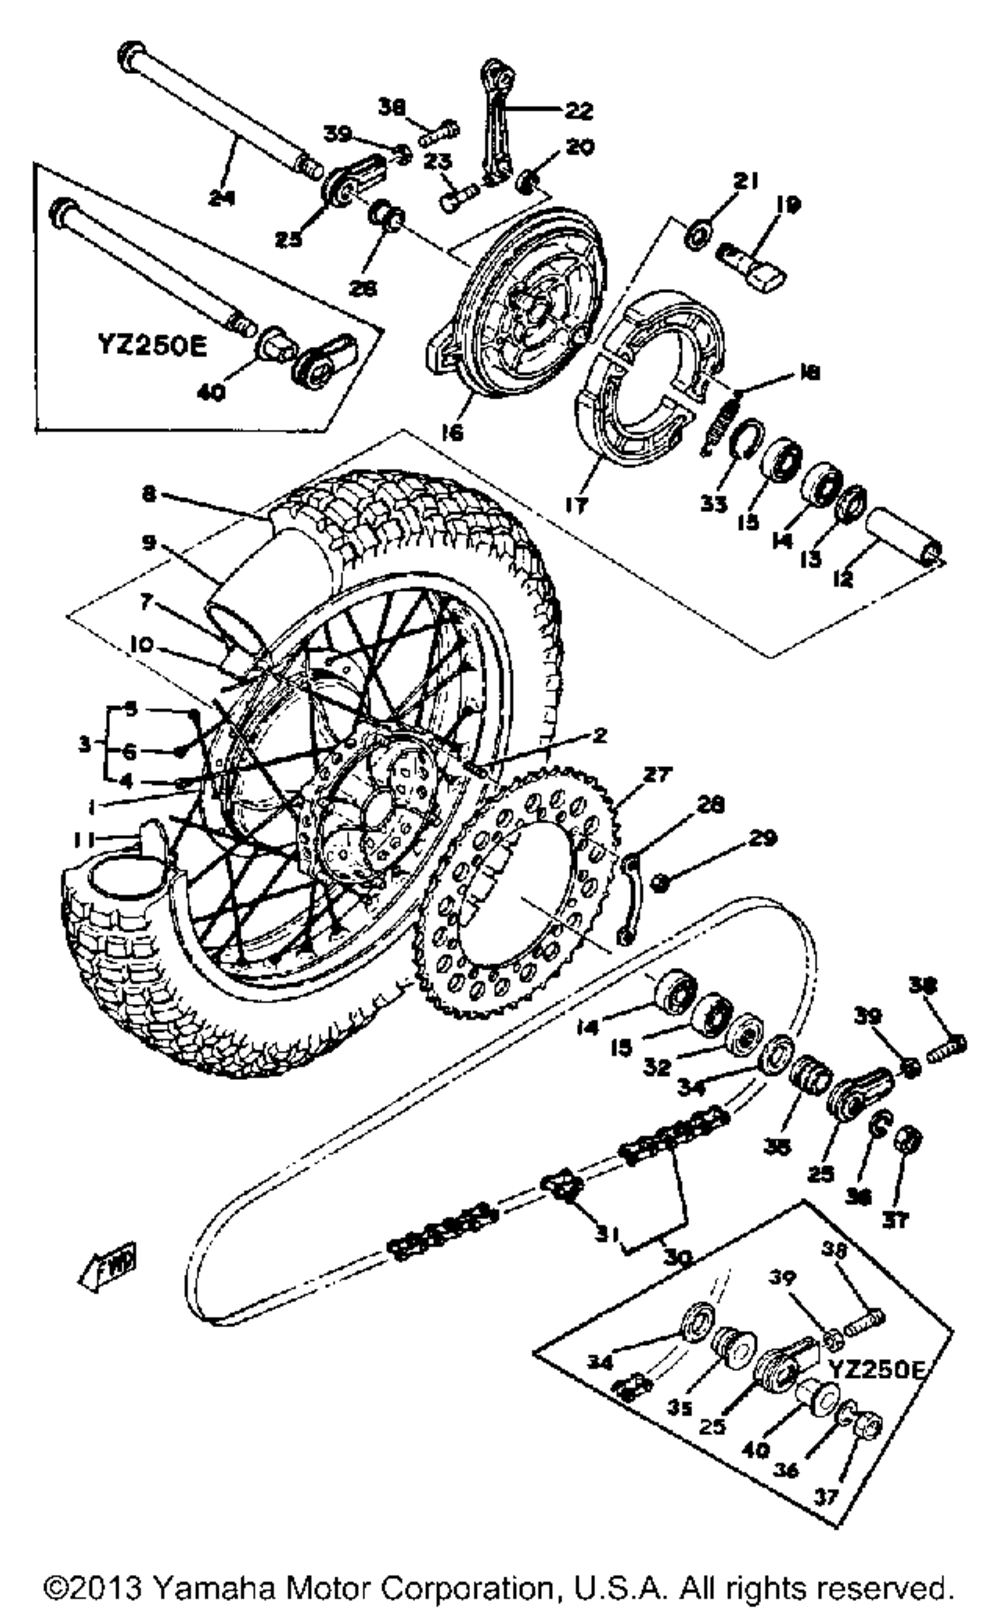 Rear wheel yz250d - e